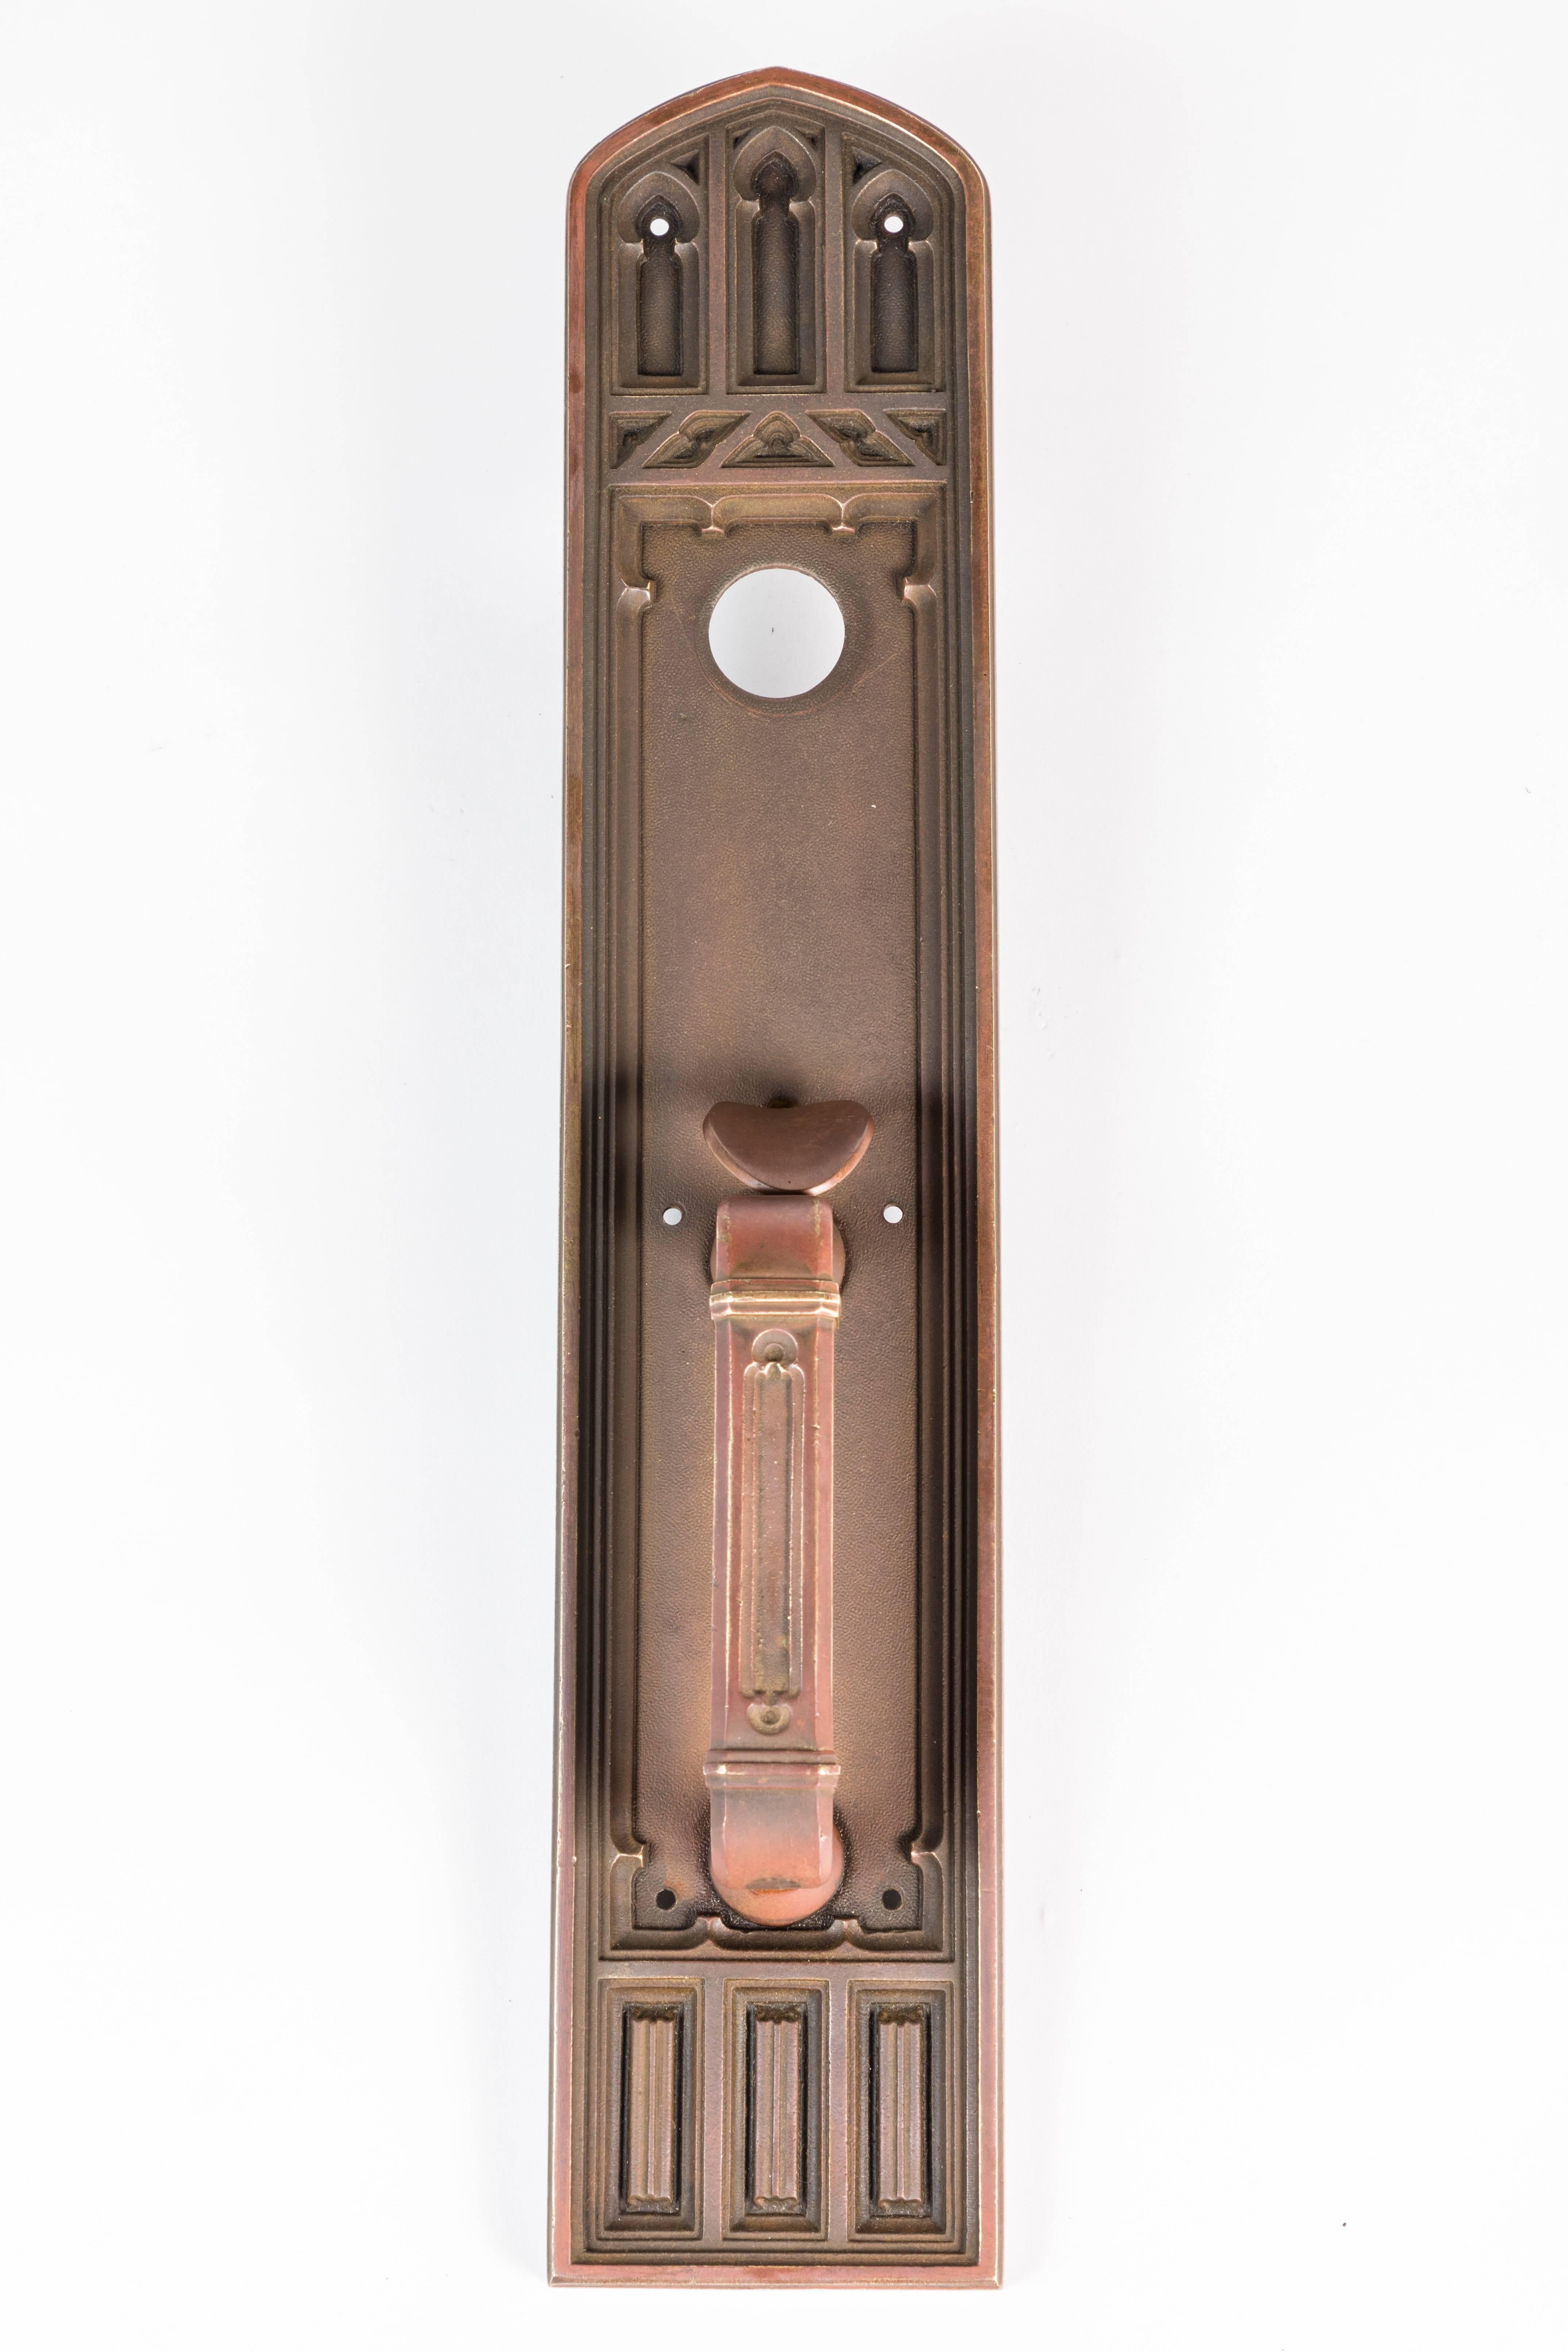 Cast brass exterior thumb lever door handle.